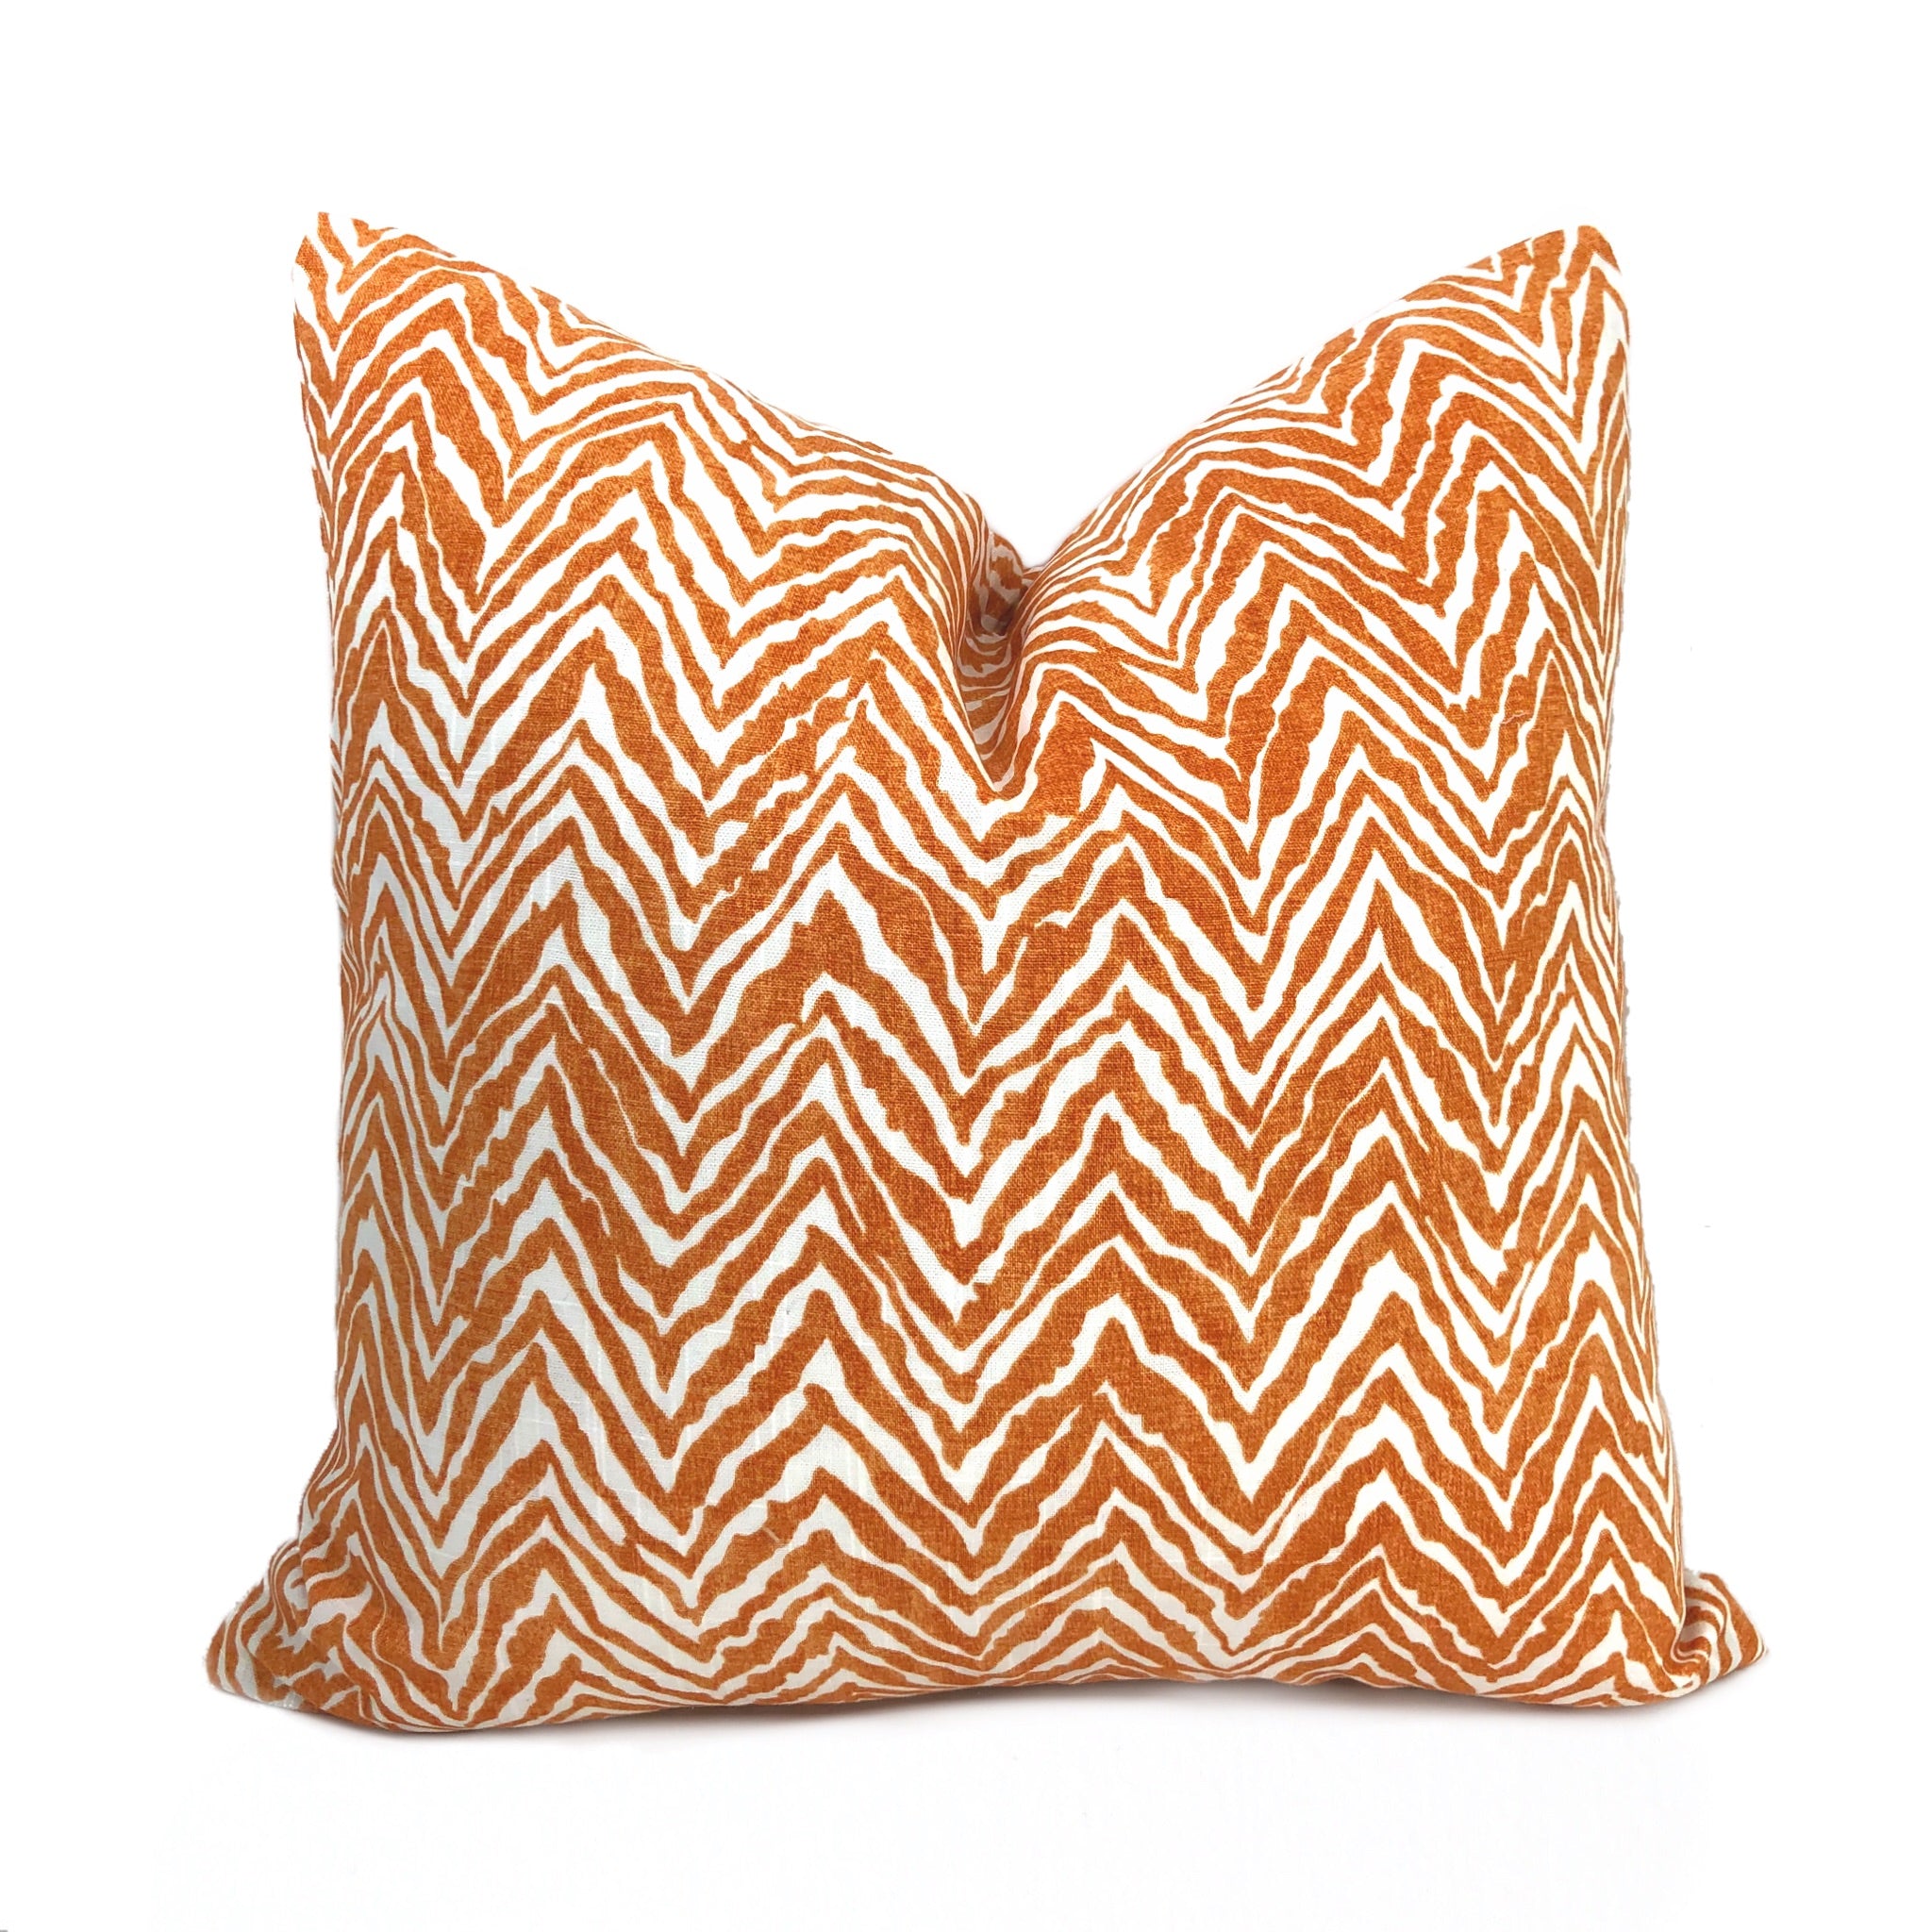 Tigra Orange White Animal Print Pillow Cover Lumbar Pillow 12x18 12x20 12x24 14x20 16x26